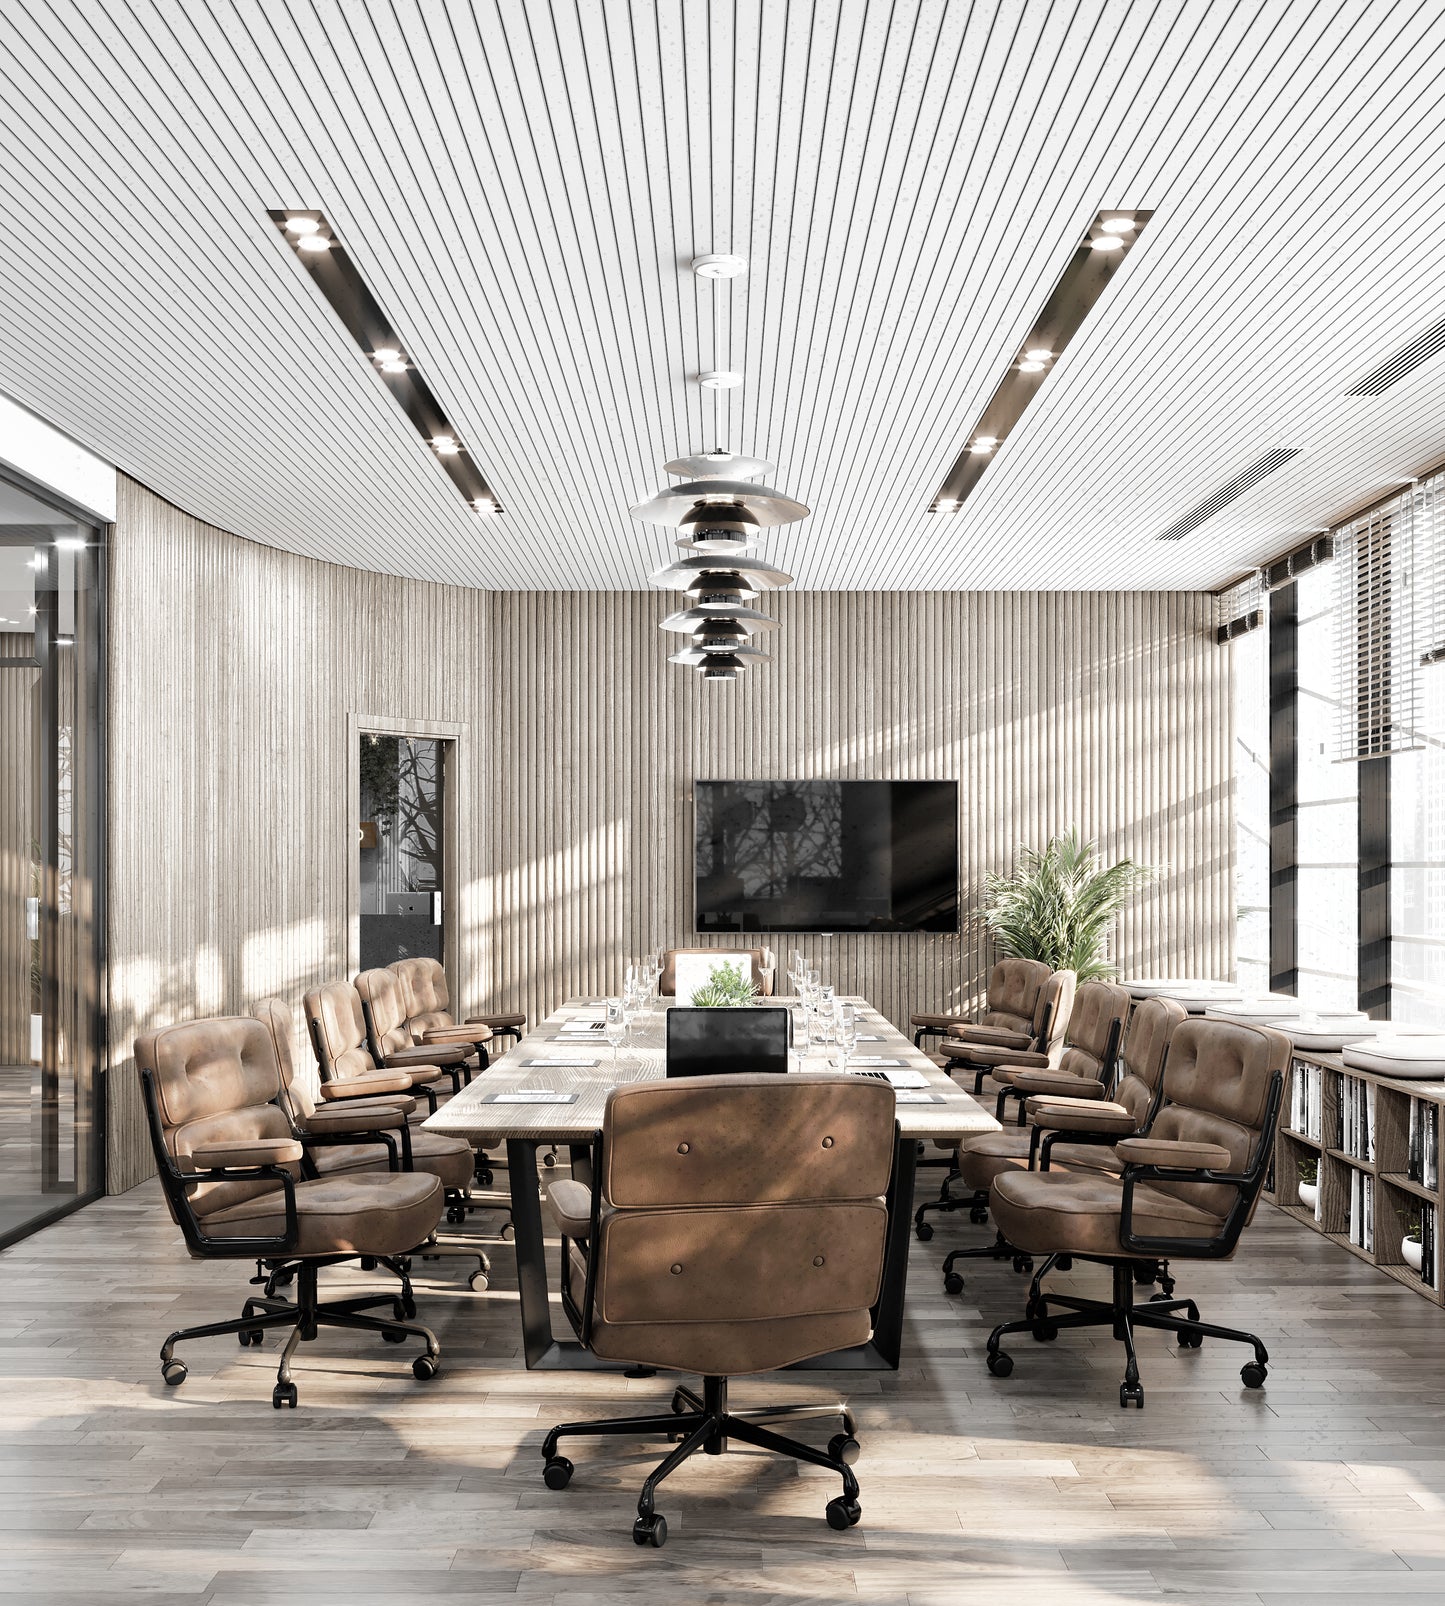 MEETINGS ROOMS Interior Design & Decorations Services in Dubai